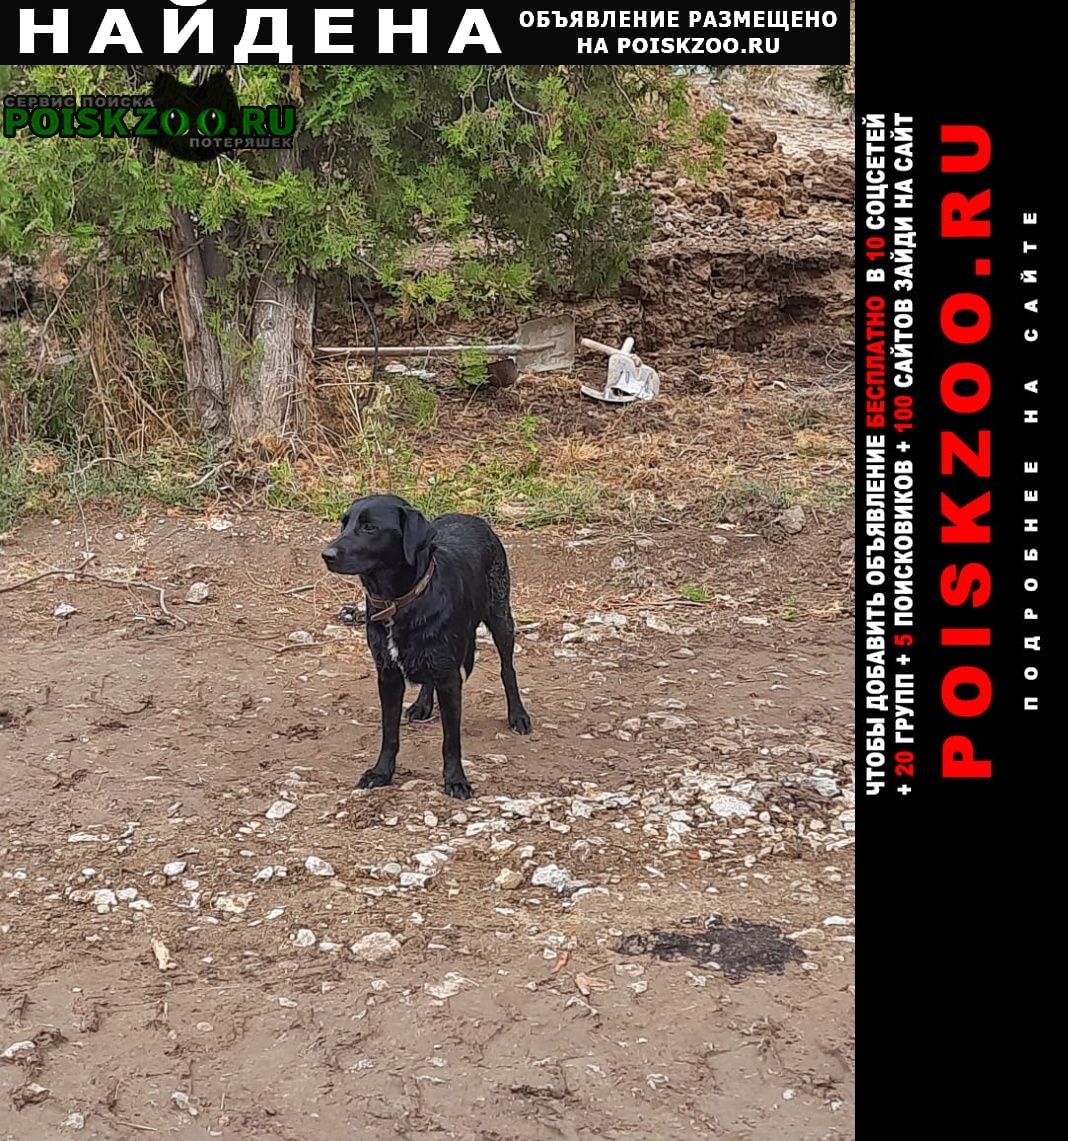 Найдена собака Краснодар Подробнее по ссылке: poiskzoo.ru/165265 Прибилась на стройке в ст. Елизаветинская. #Найдена_собака #НайденаСобака #НайденасобакаКраснодар #Найдена_собака_Краснодар